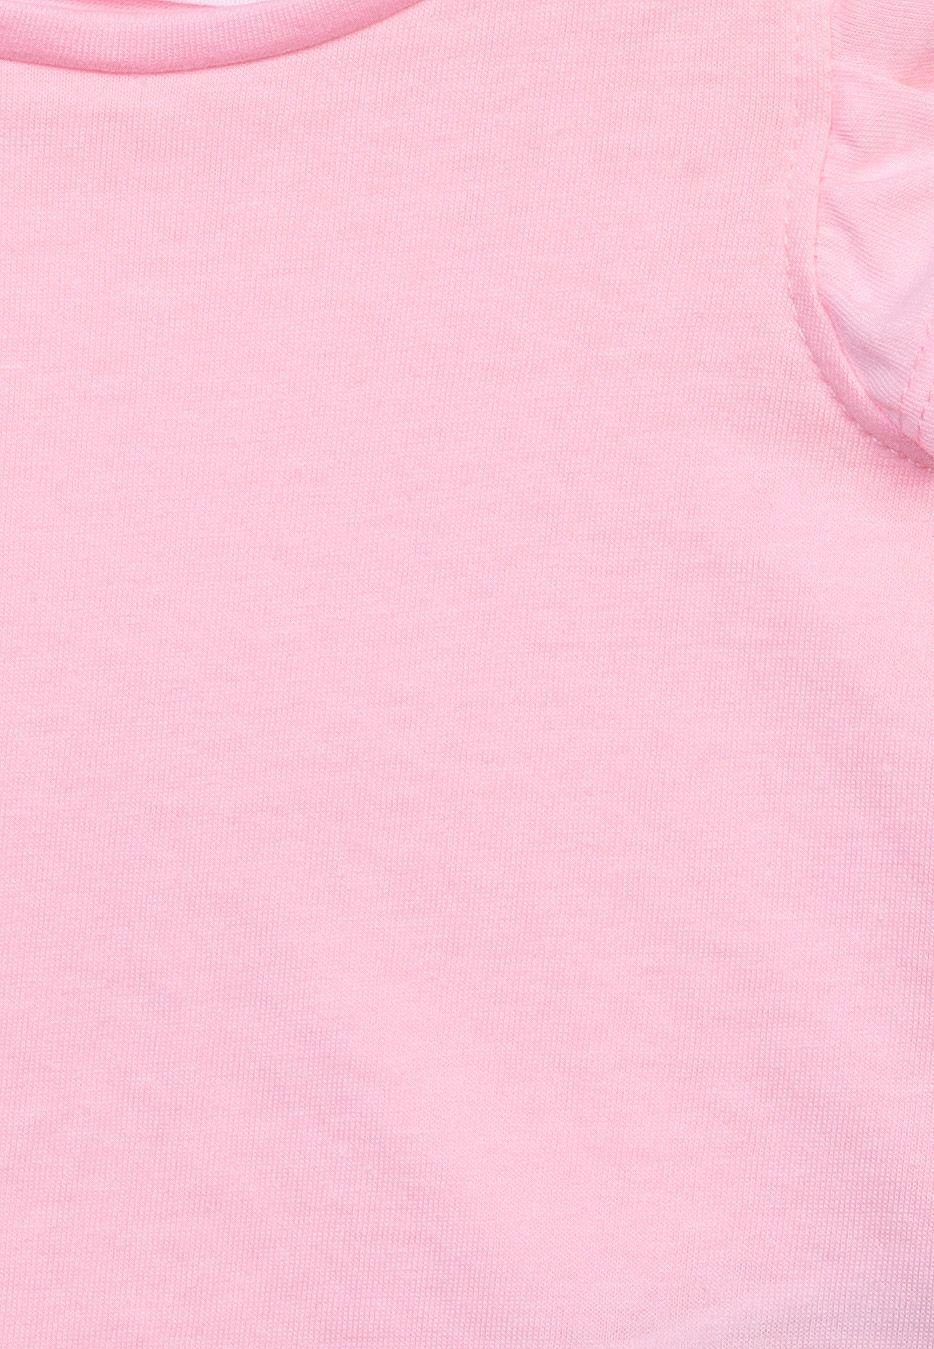 MINOTI T-Shirt Weste mit Neonrosa Rüschen (1y-14y)